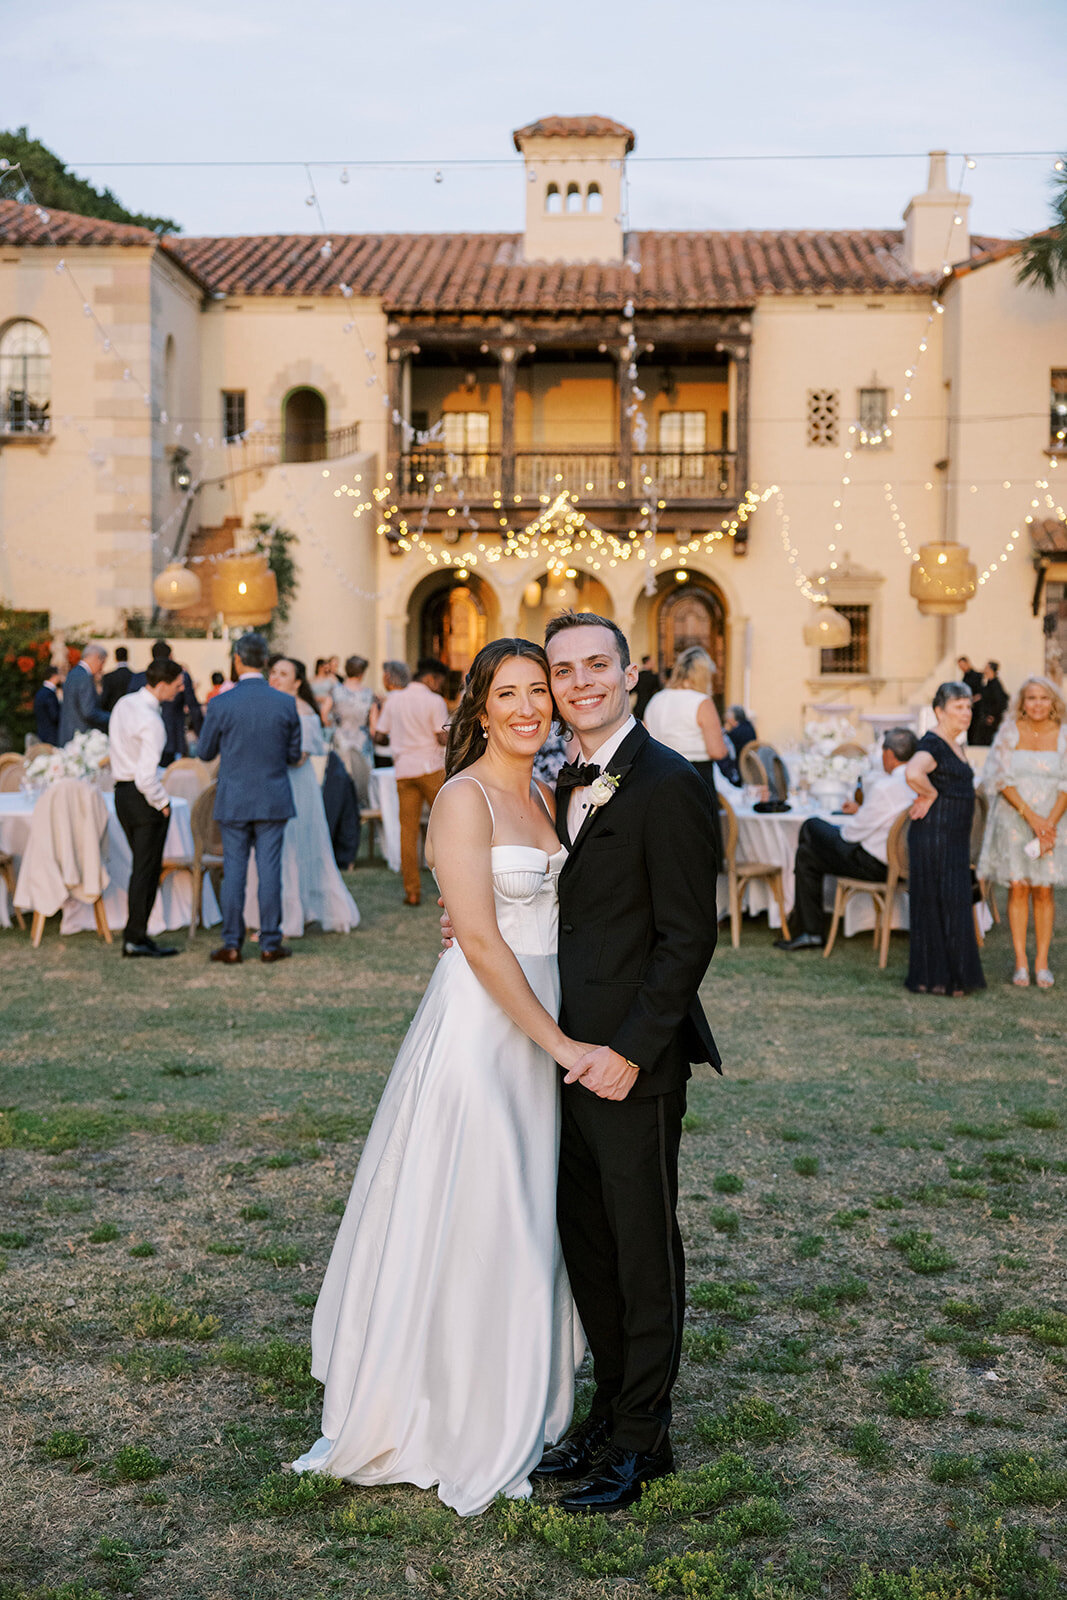 CORNELIA ZAISS PHOTOGRAPHY COURTNEY + ANDREW WEDDING 1005_websize